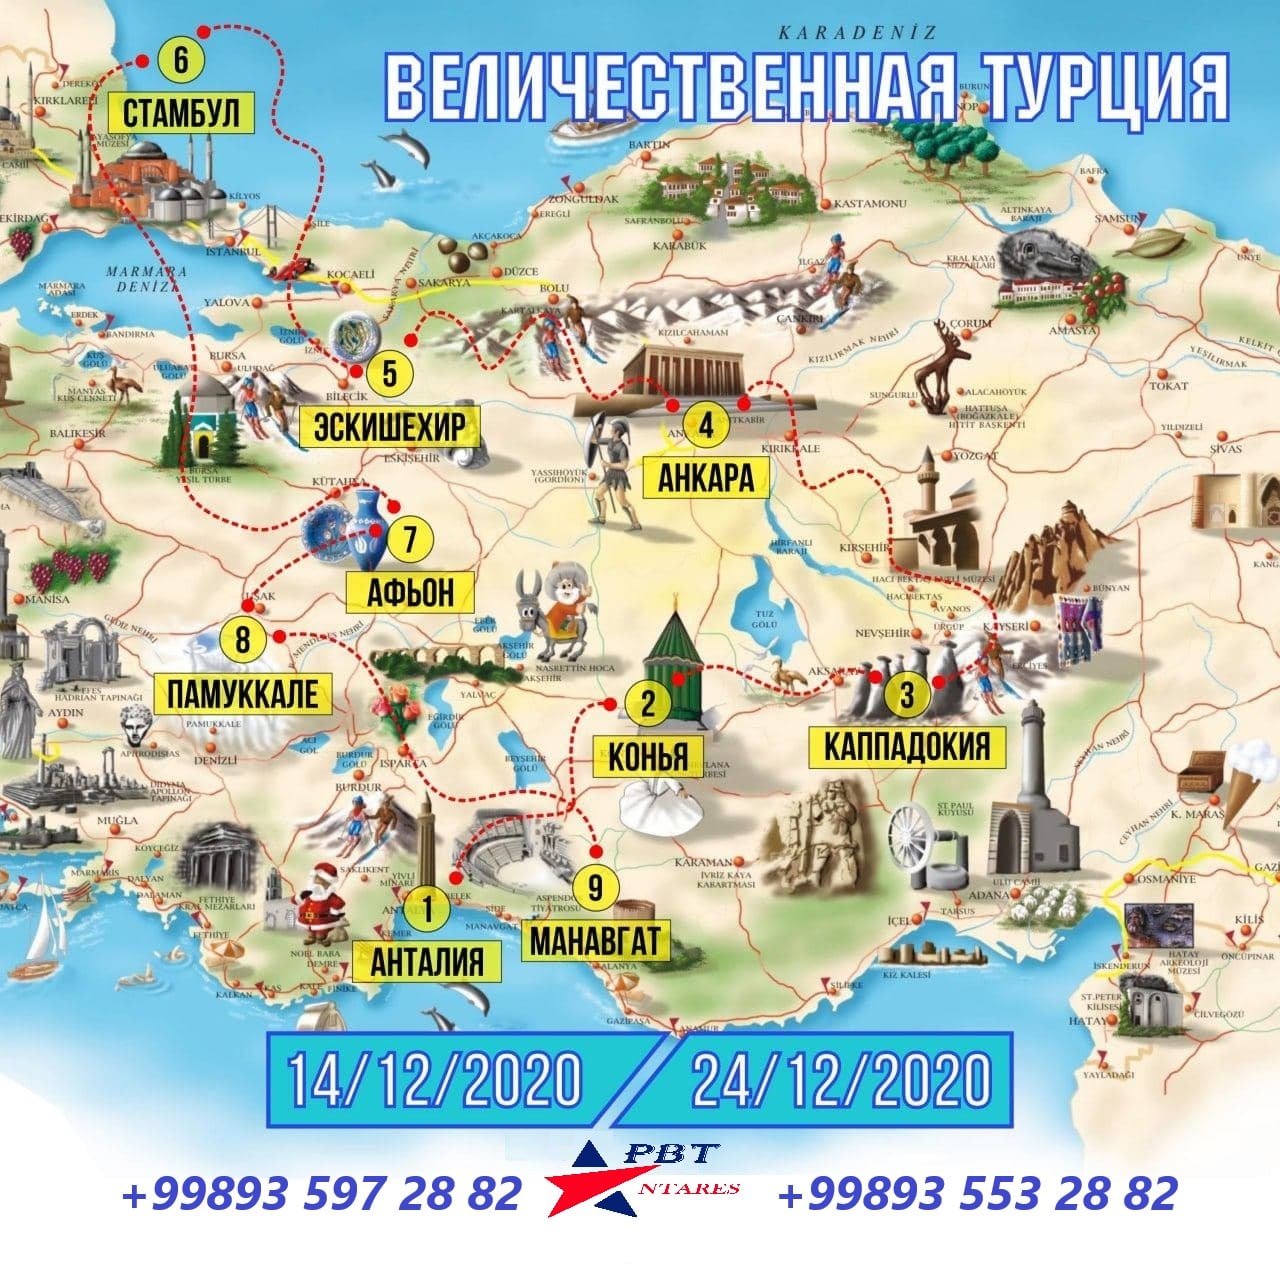 Отзывы на карте турции